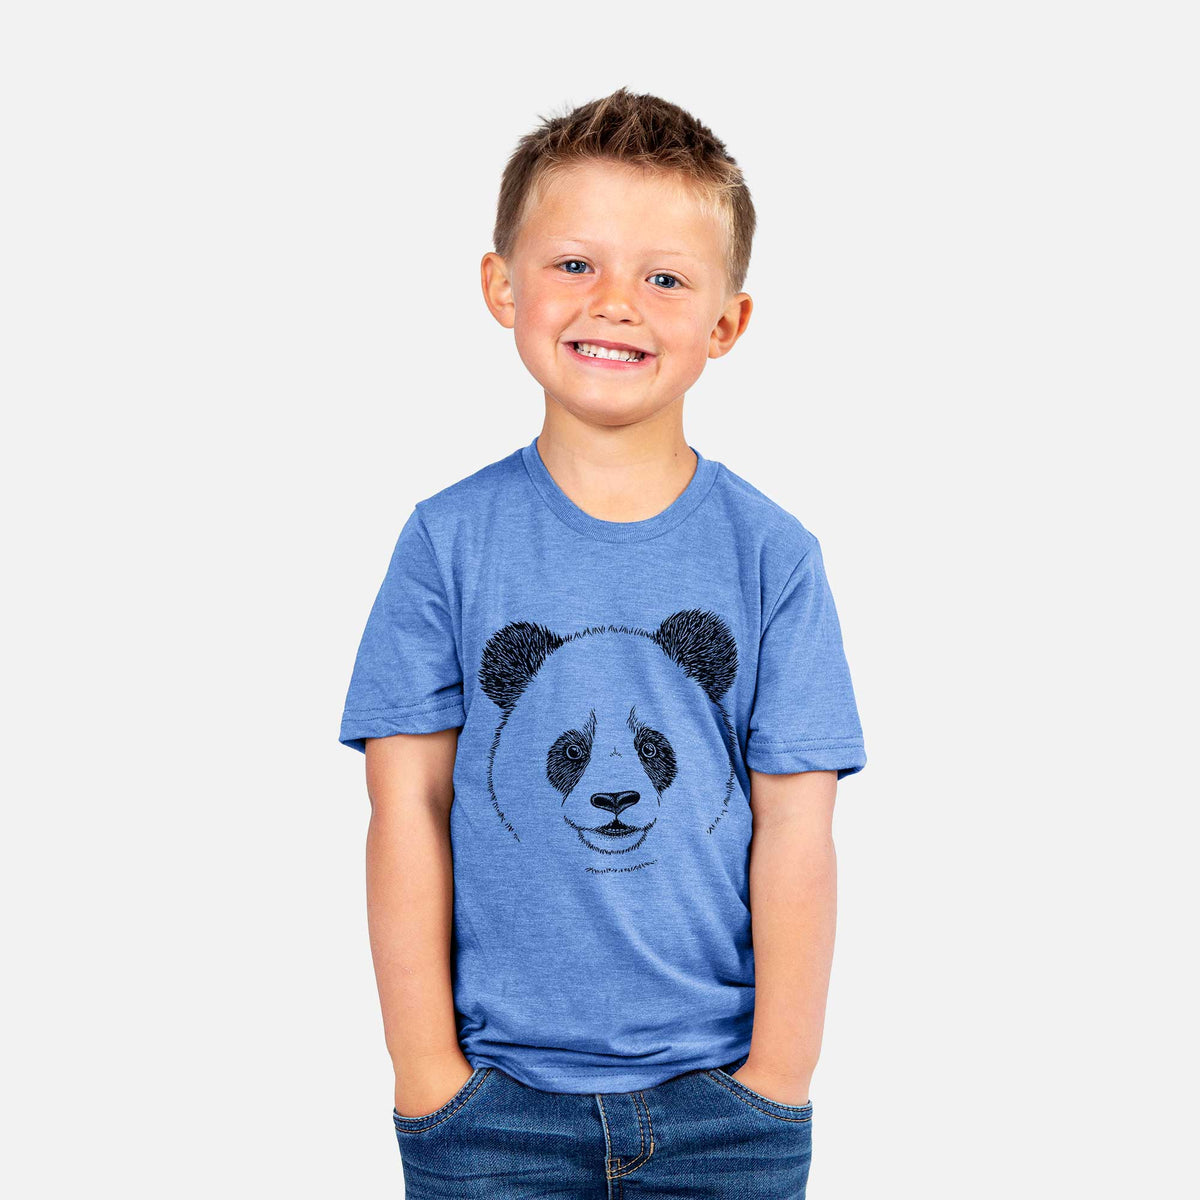 Giant Panda - Kids Shirt